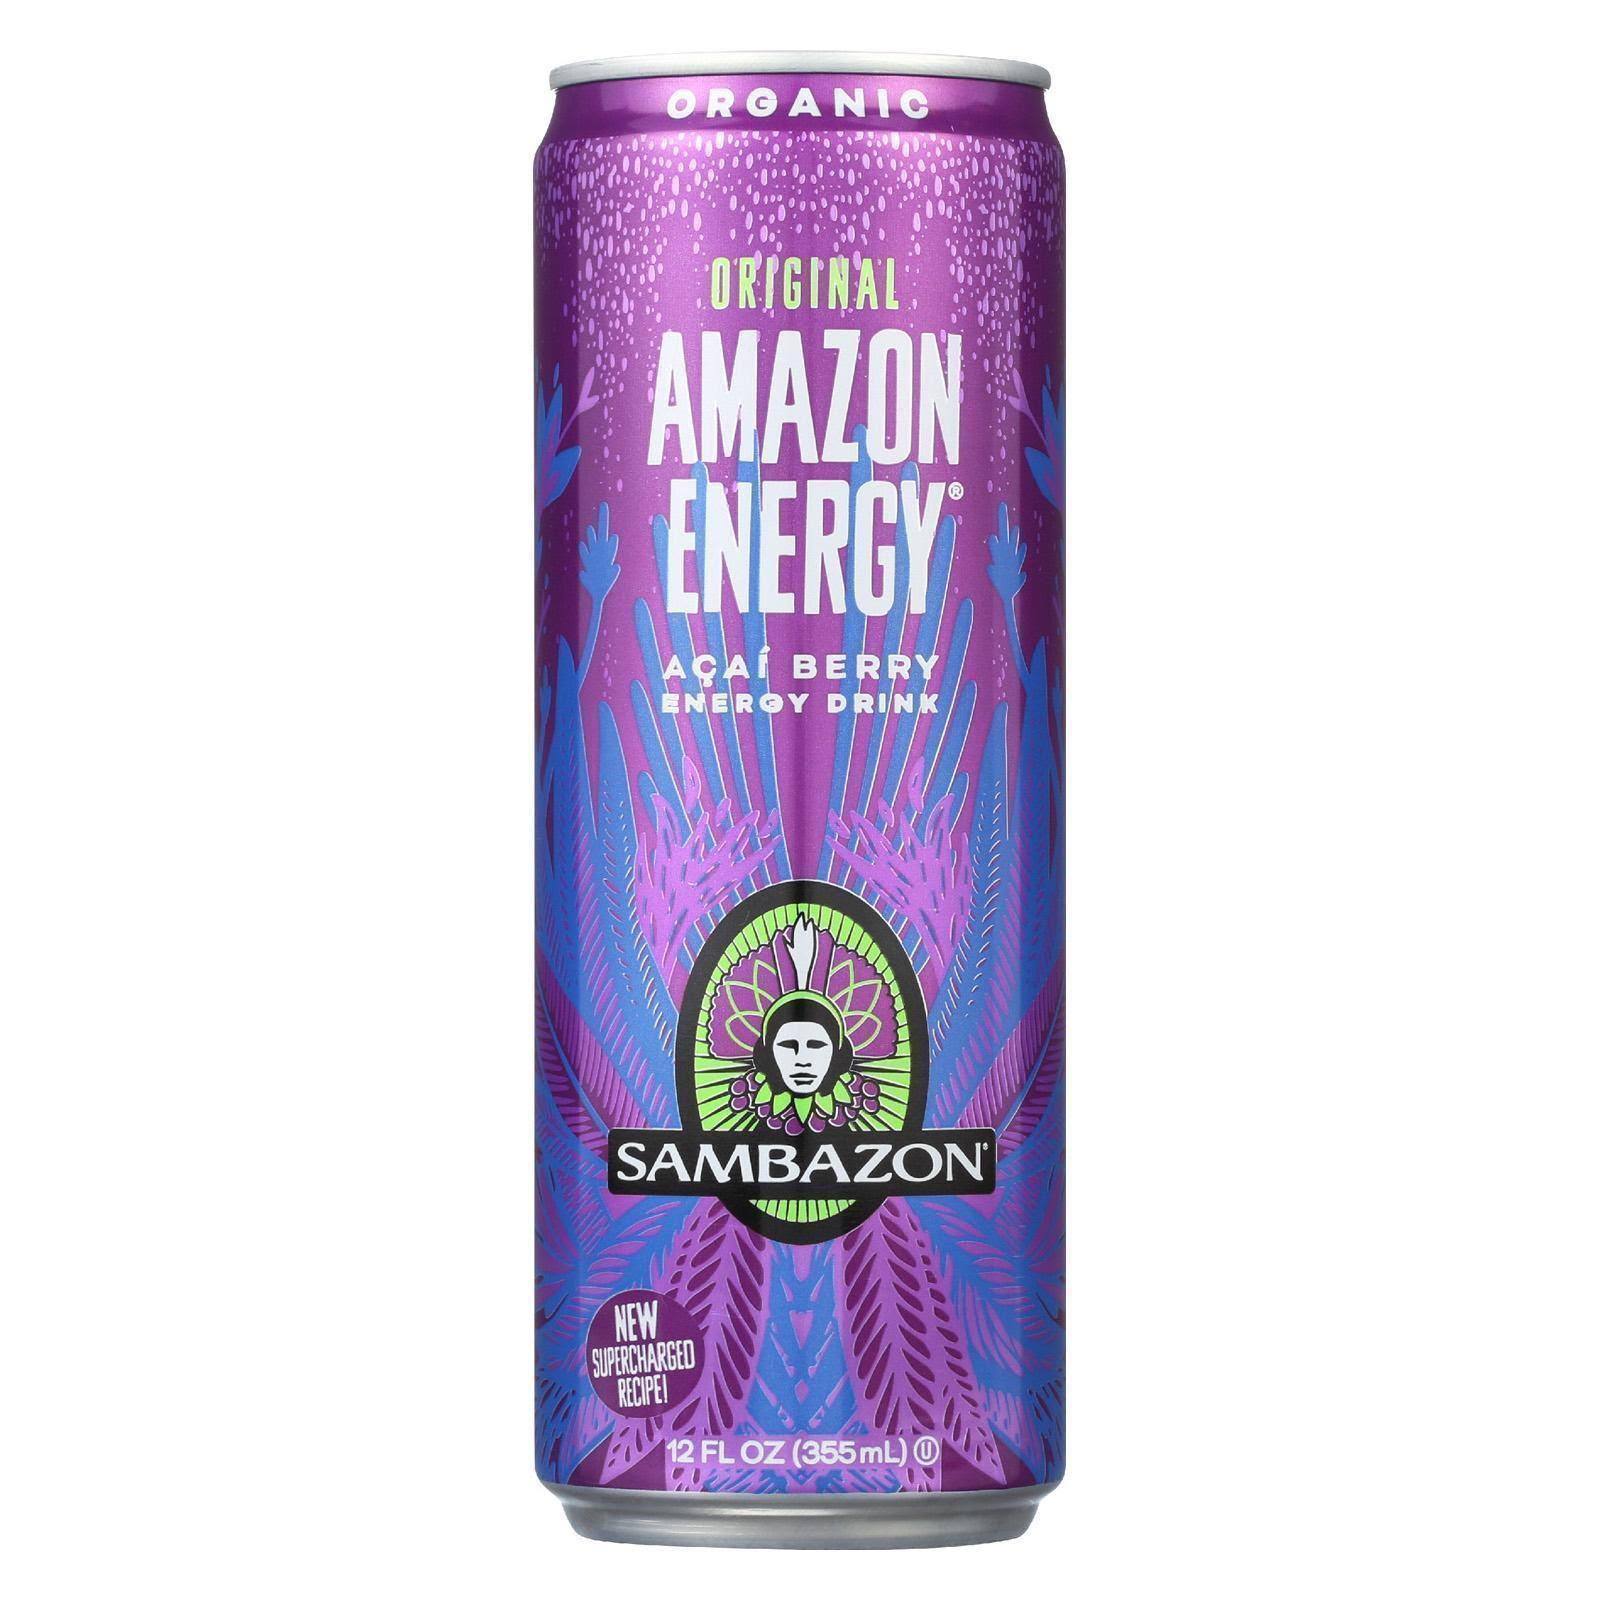 Sambazon Organic Amazon Energy Drink - 12oz